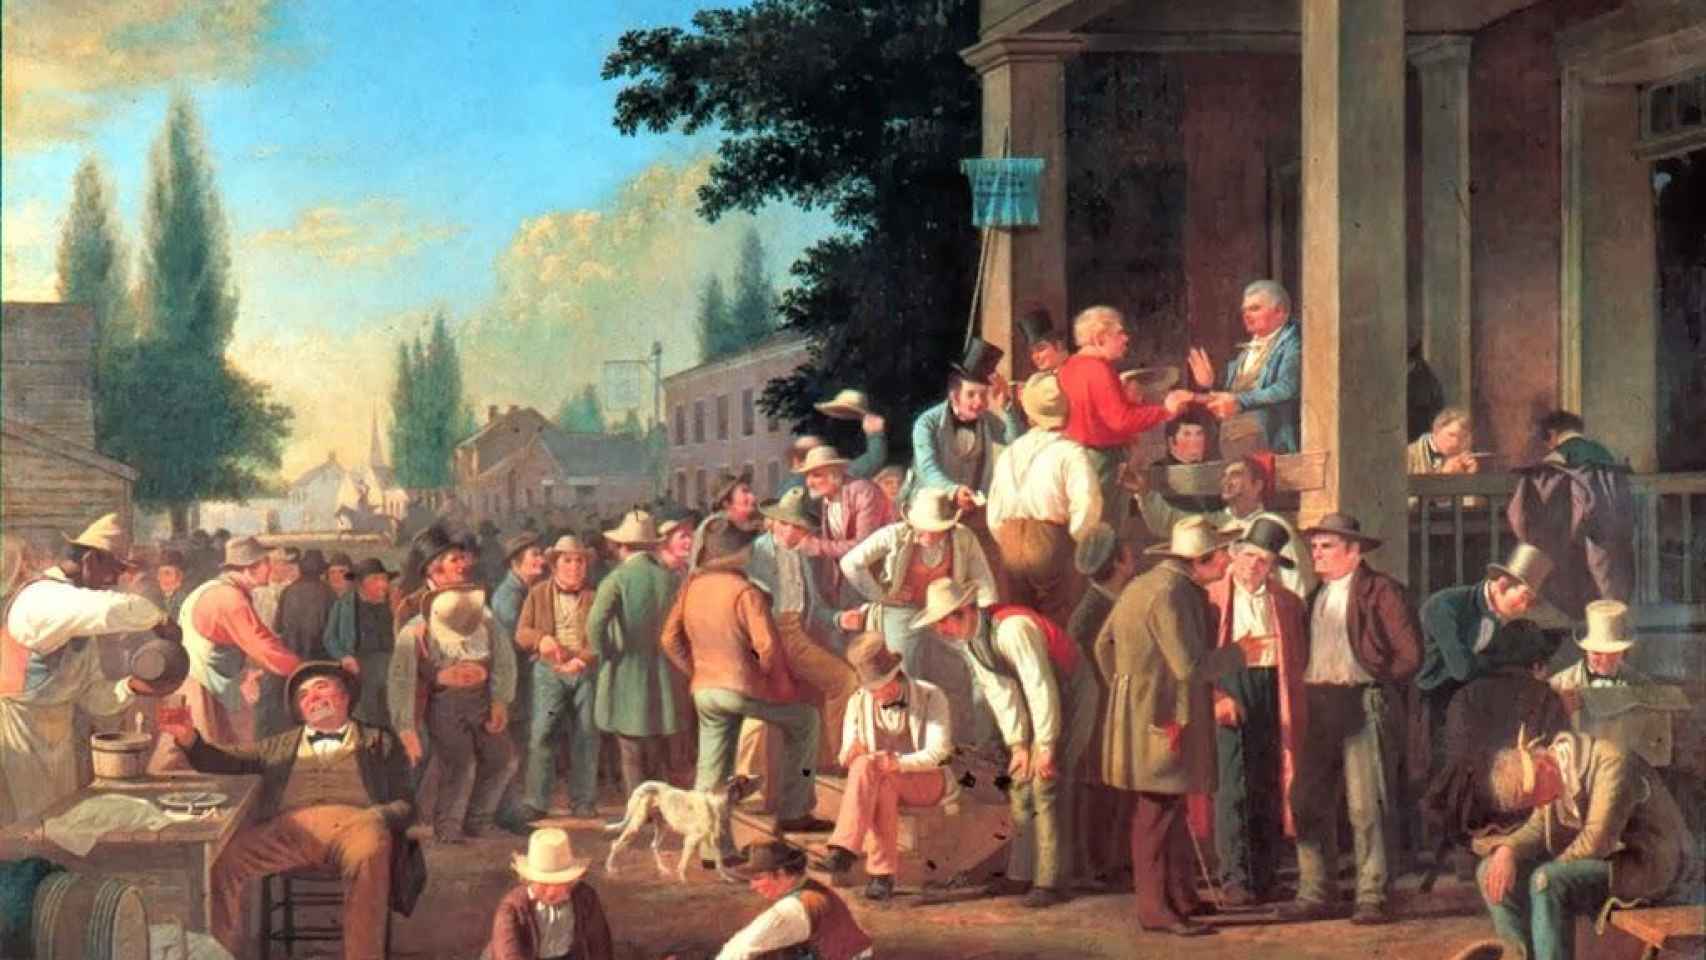 Votantes borrachos en las elecciones del Condado (1852), una obra de George Caleb Bingham